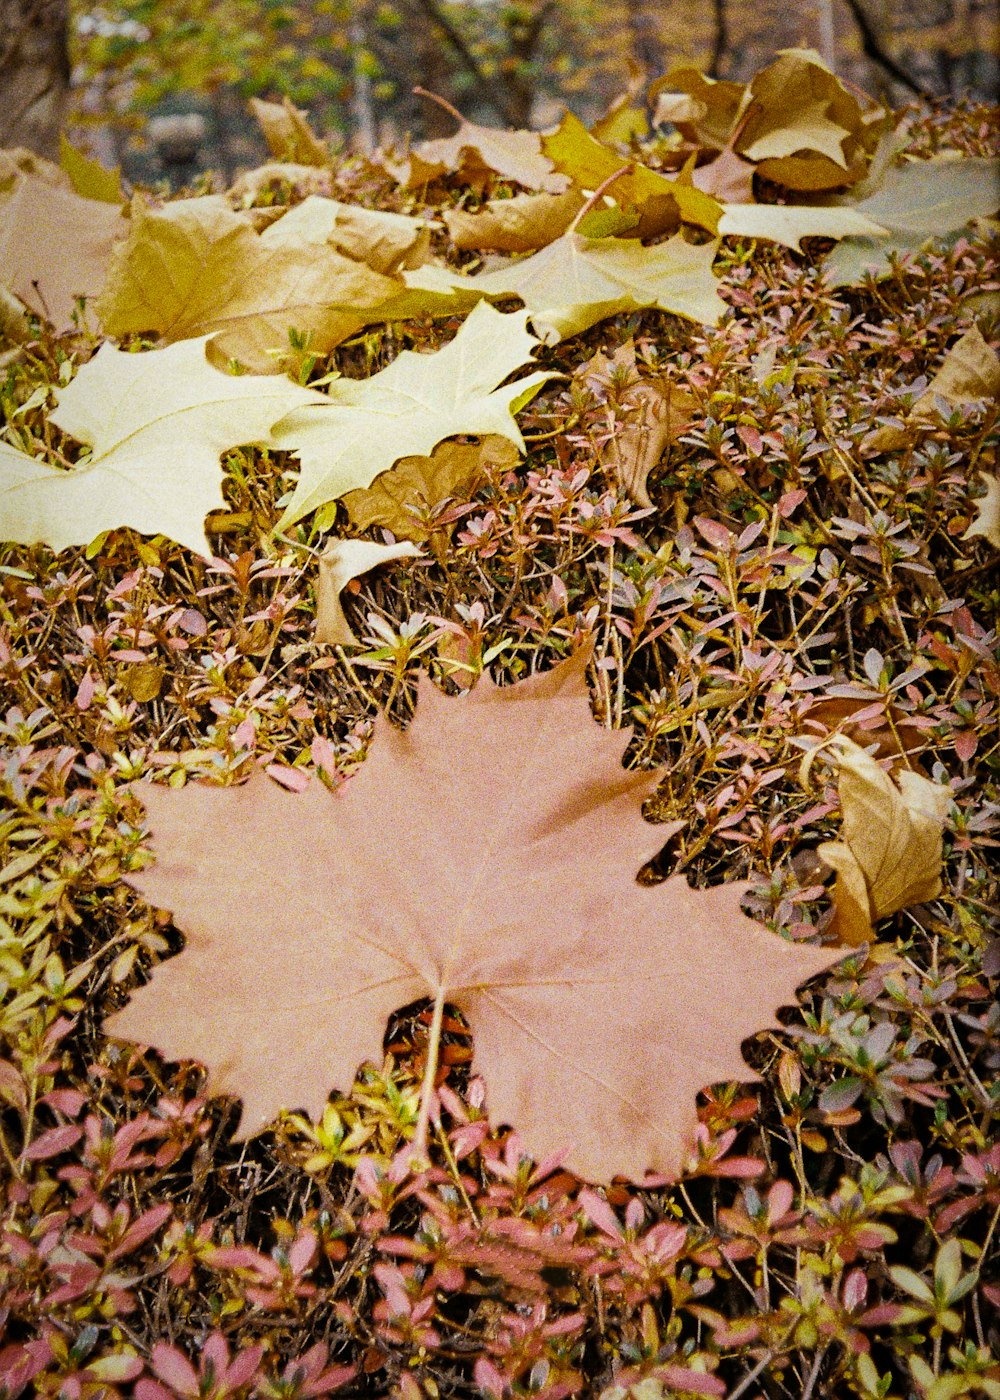 나뭇잎으로 둘러싸인 땅에 누워있는 나뭇잎